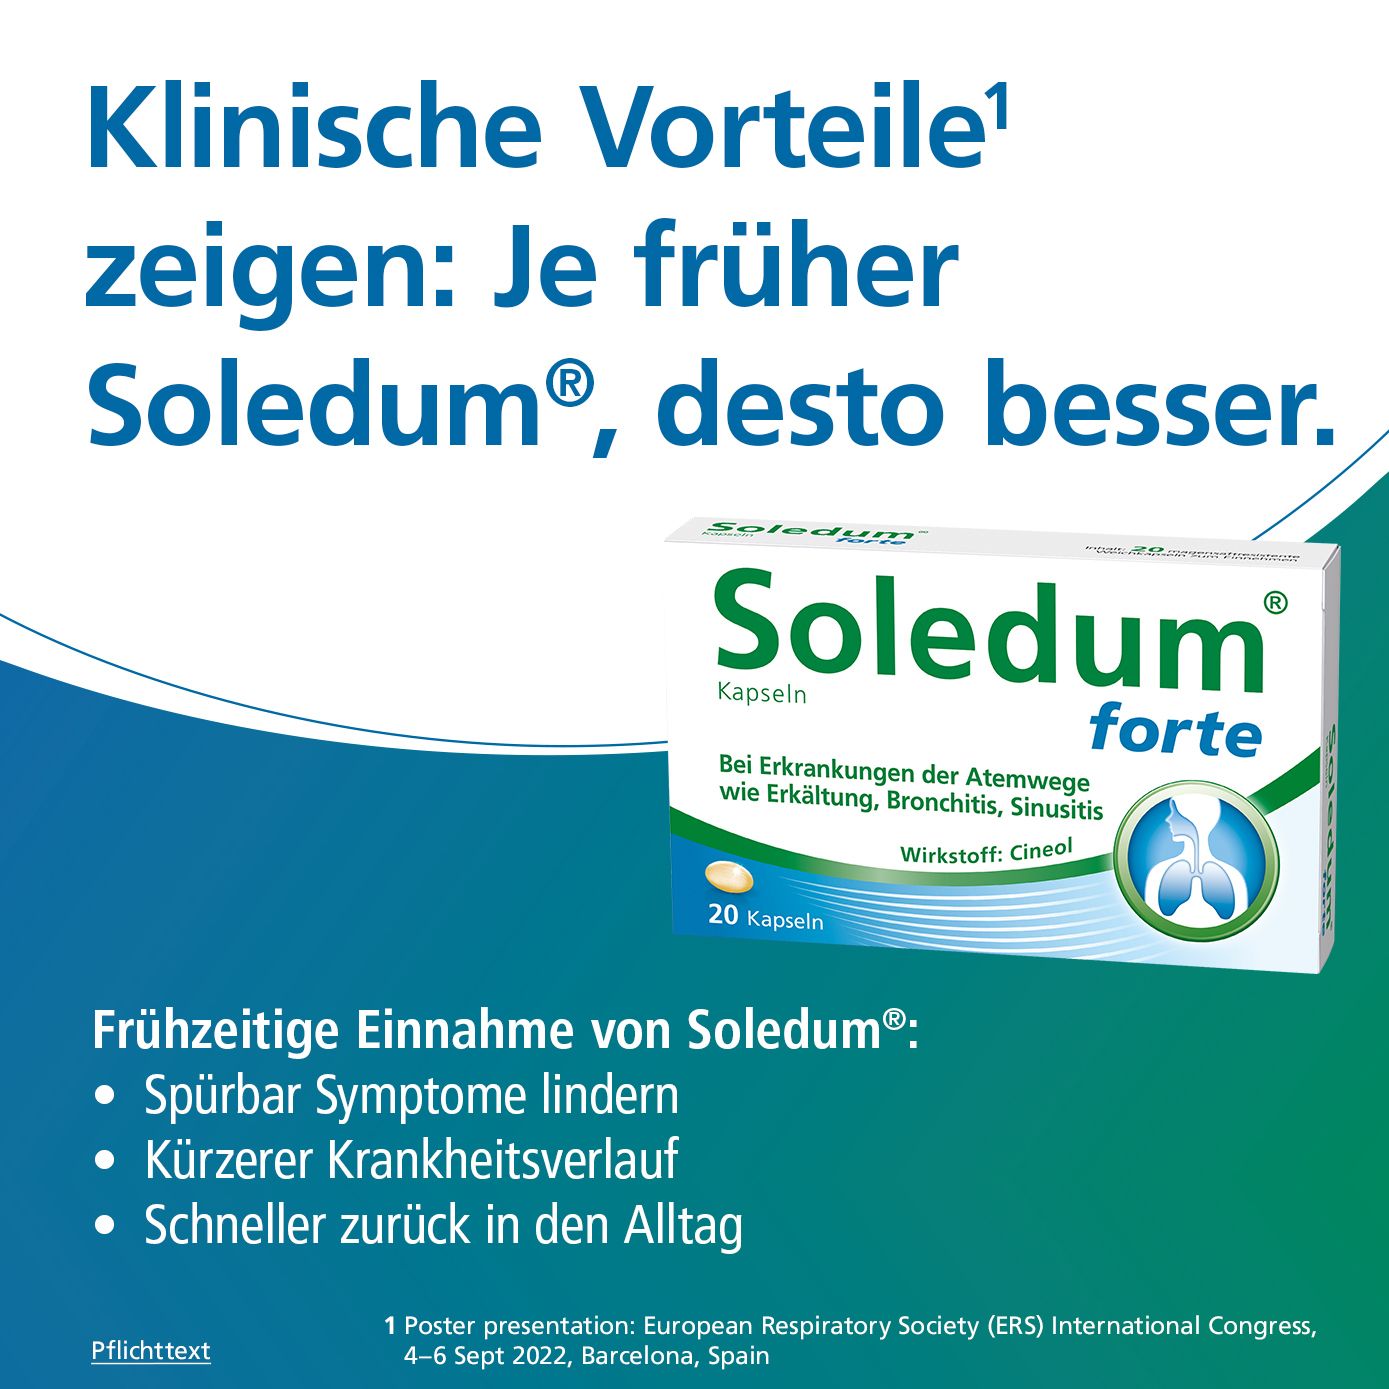 Soledum® forte Kapseln bei Erkältung, Bronchitis & Sinusitis